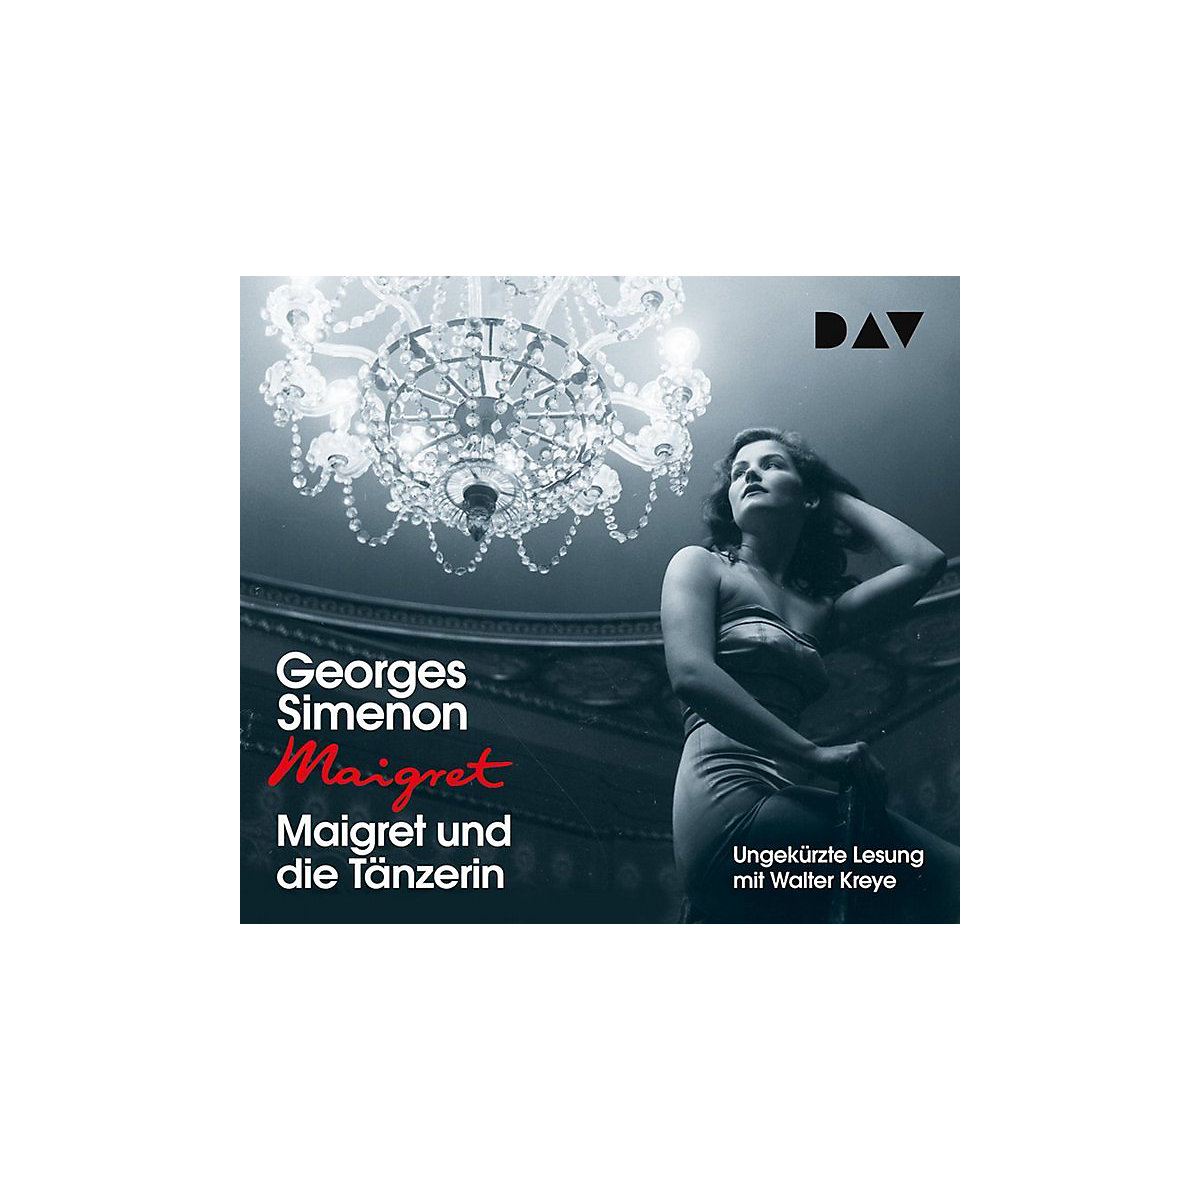 Maigret und die Tänzerin 4 Audio-CDs